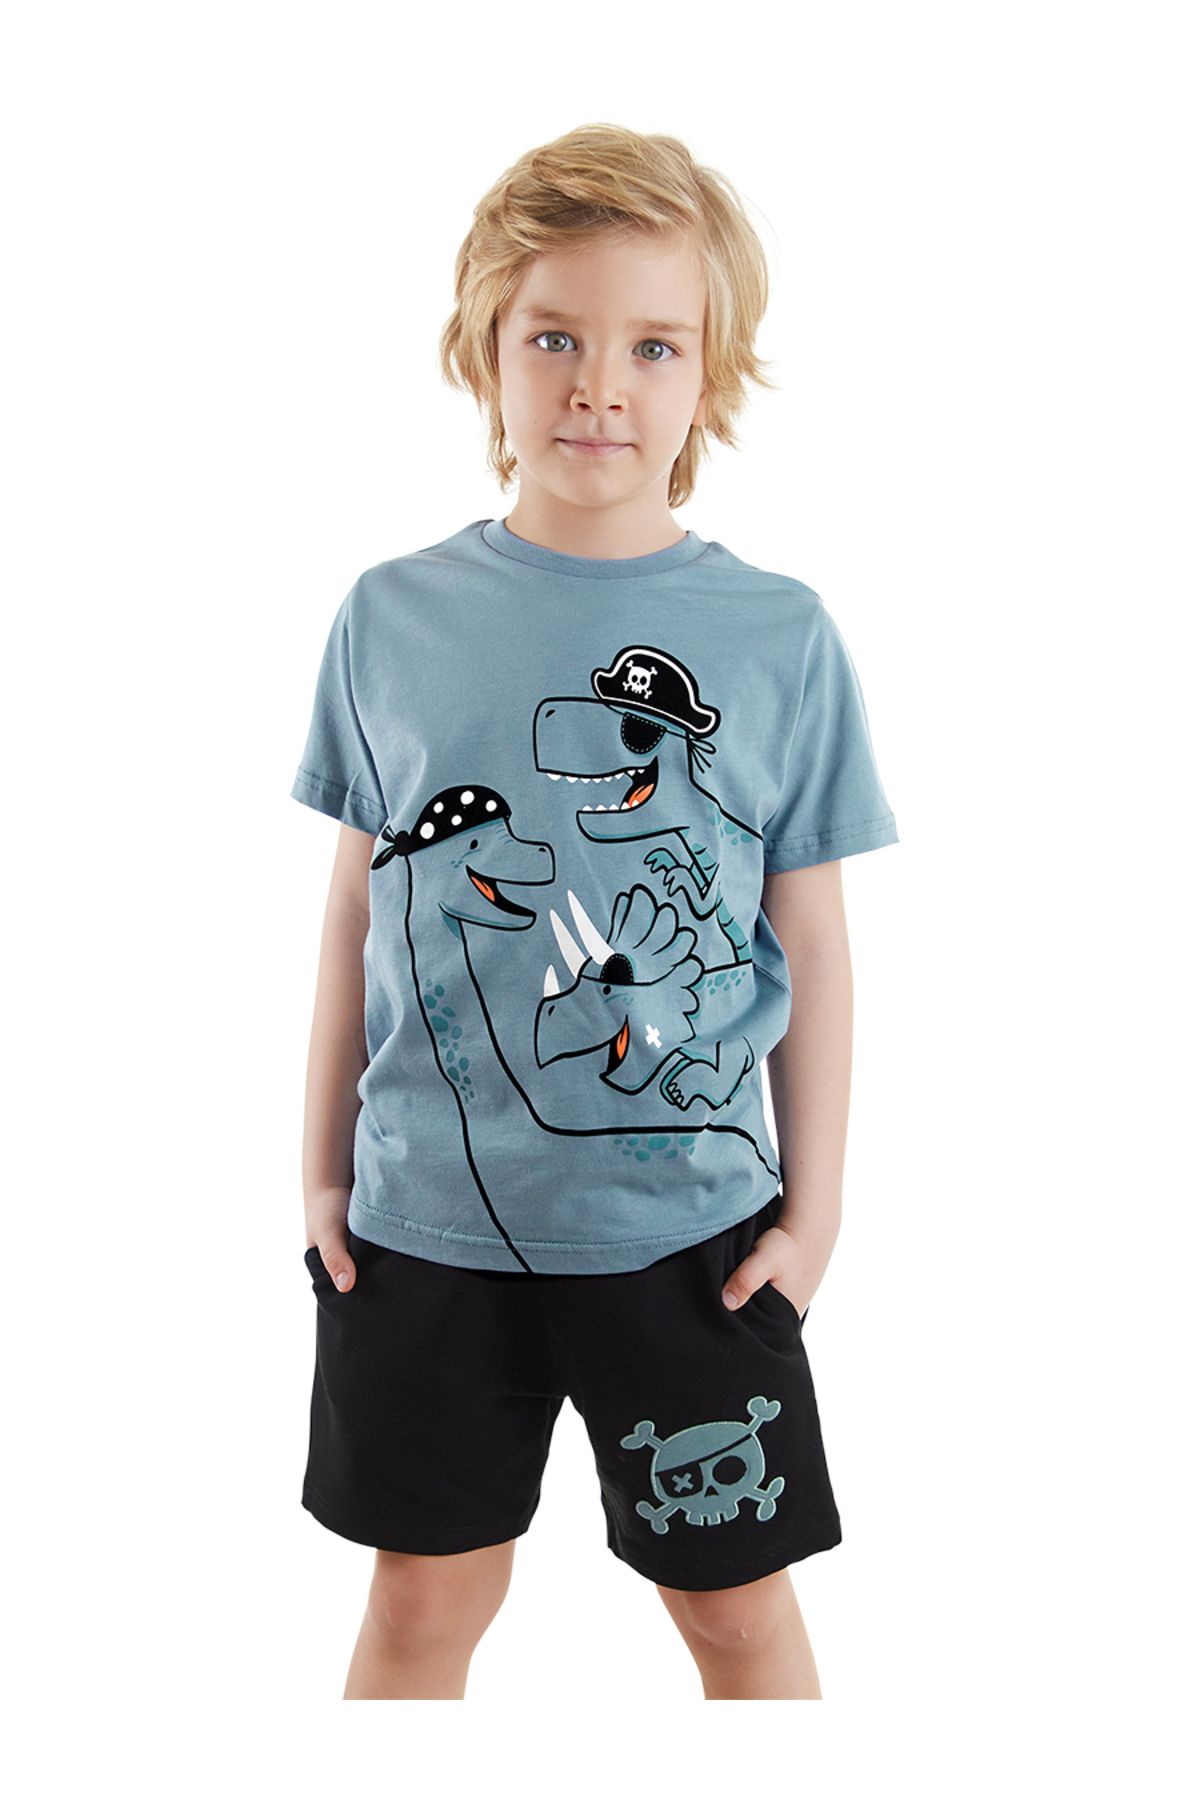 Denokids Korsan Dinolar Erkek Çocuk Yazlık T-shirt Şort Takım